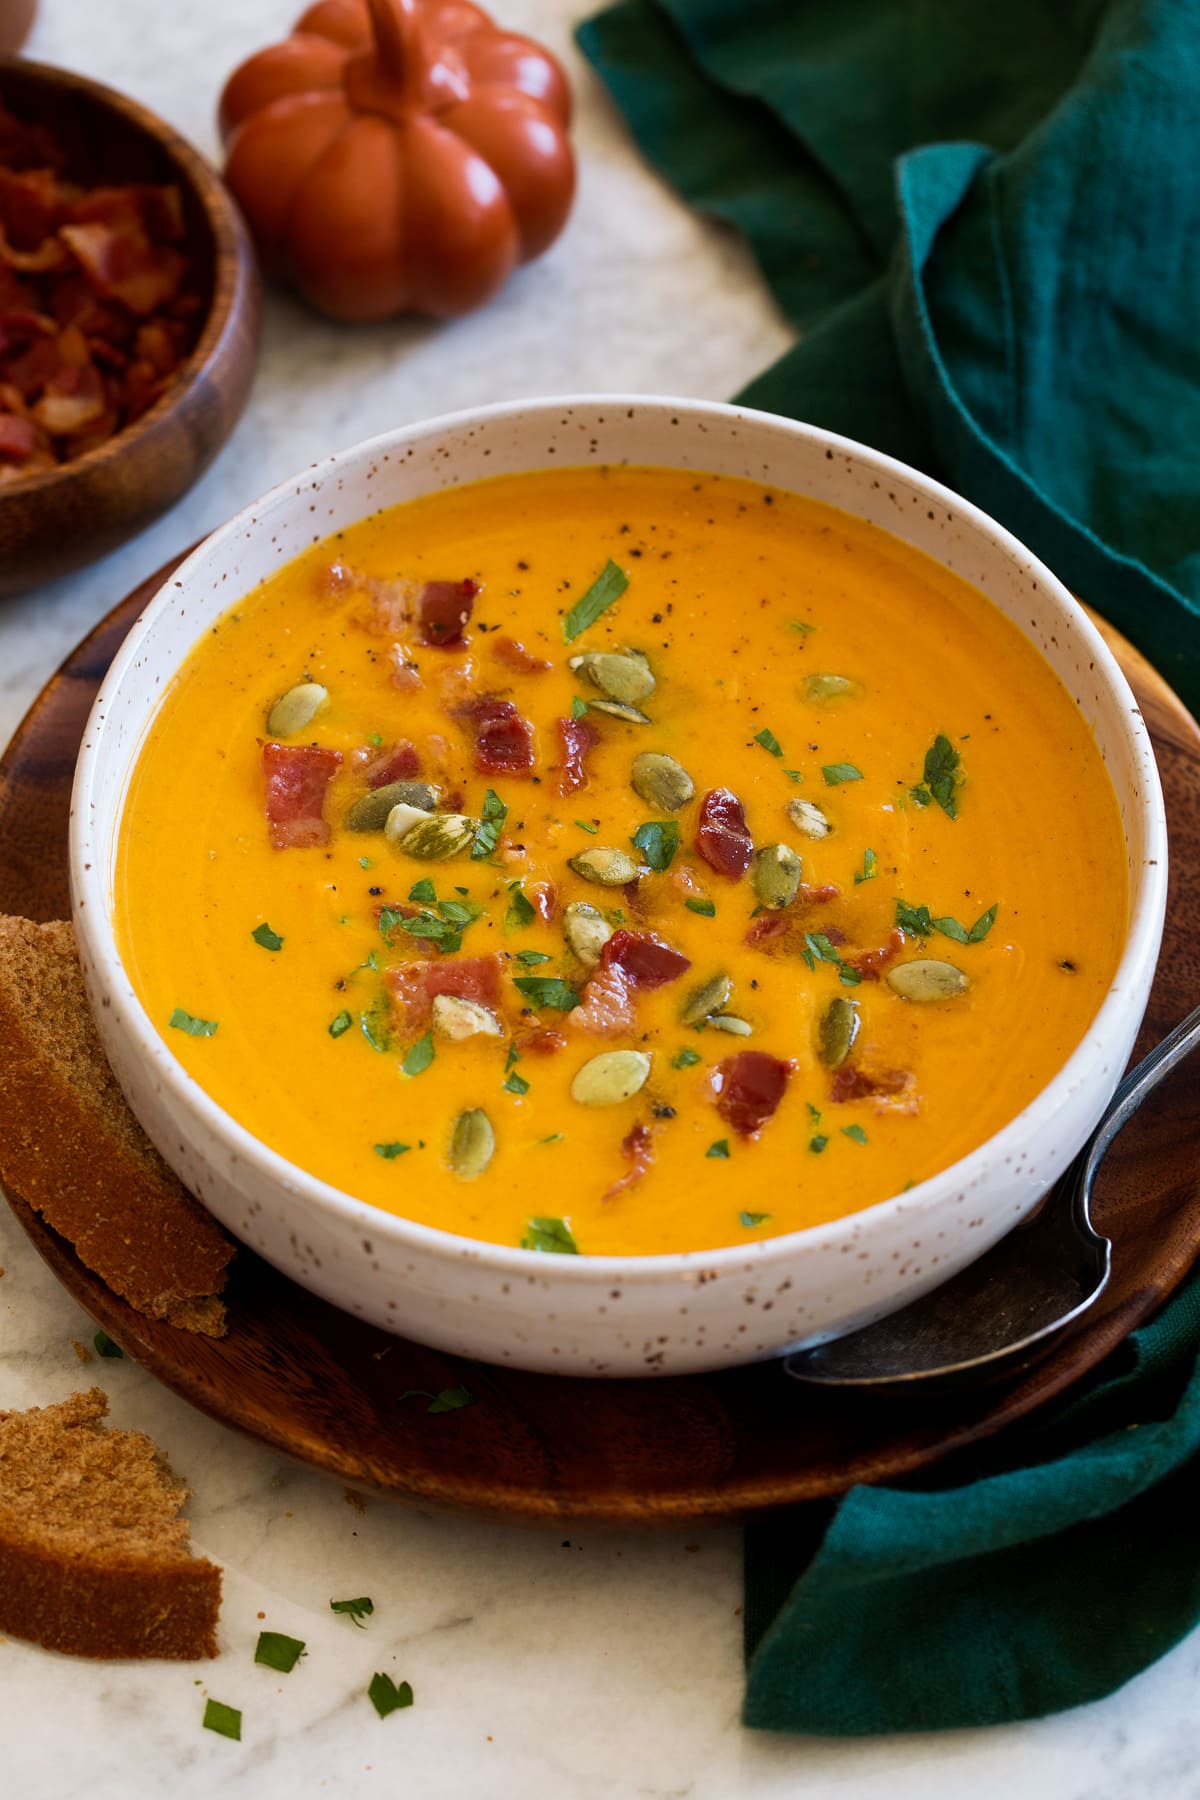 Monoporzione di zuppa di zucca condita con pancetta, prezzemolo e semi di zucca.